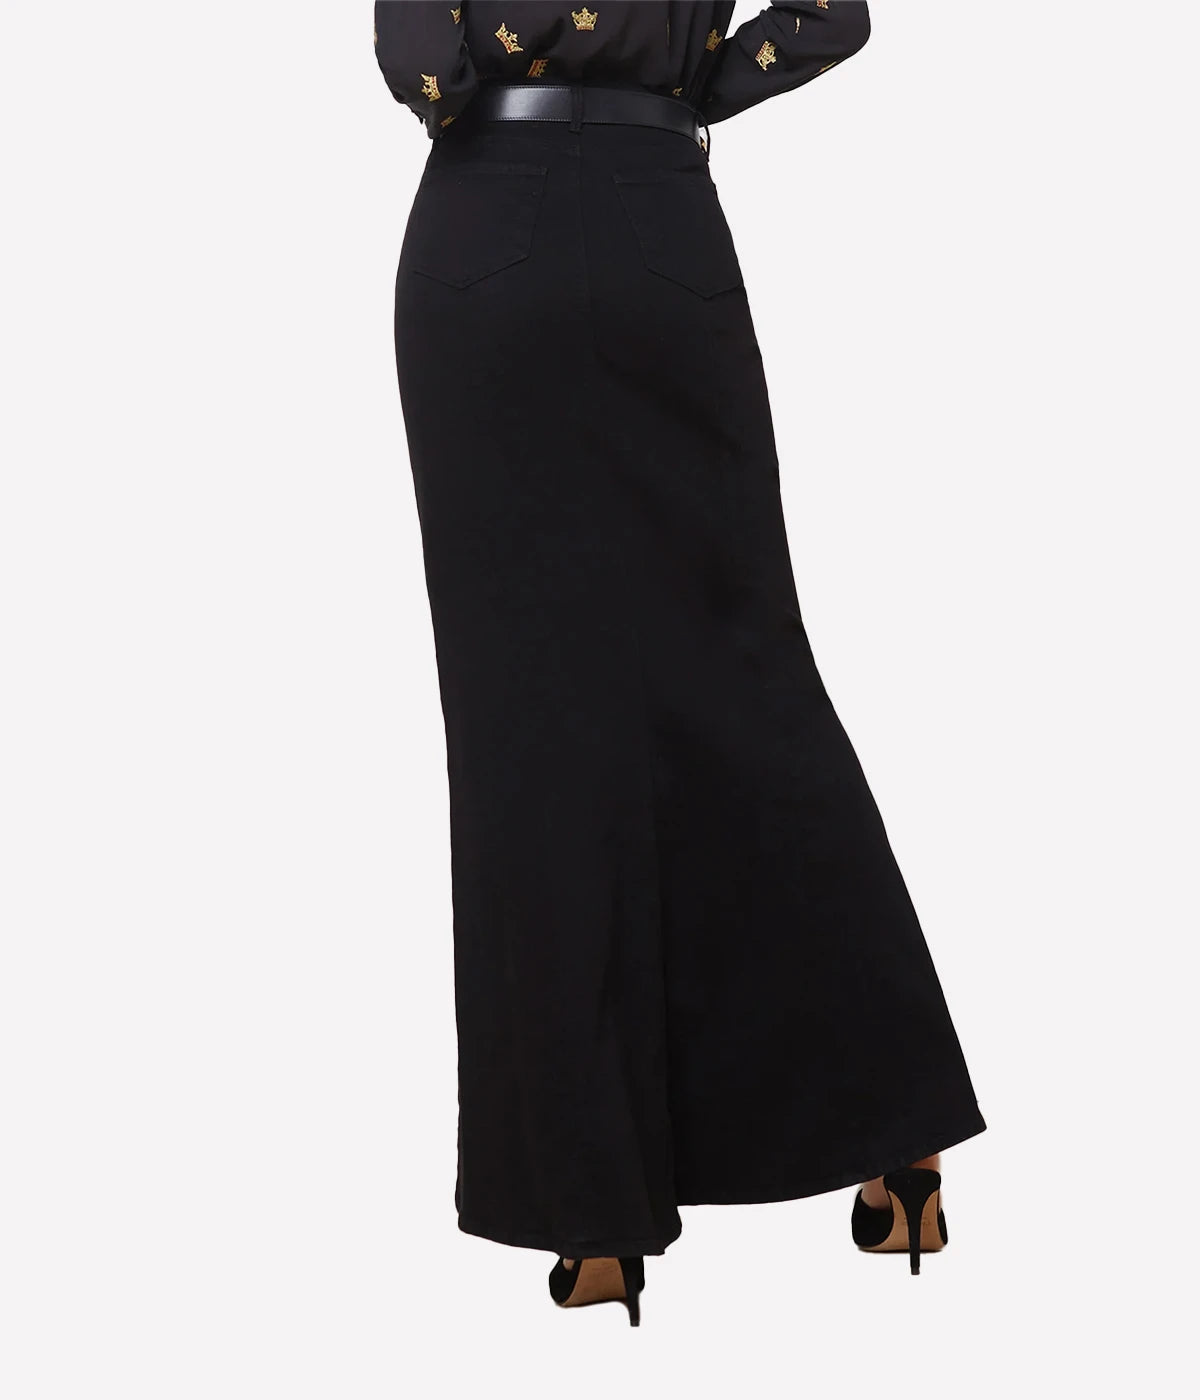 Kailani Mermaid Denim Skirt in Saturated Black